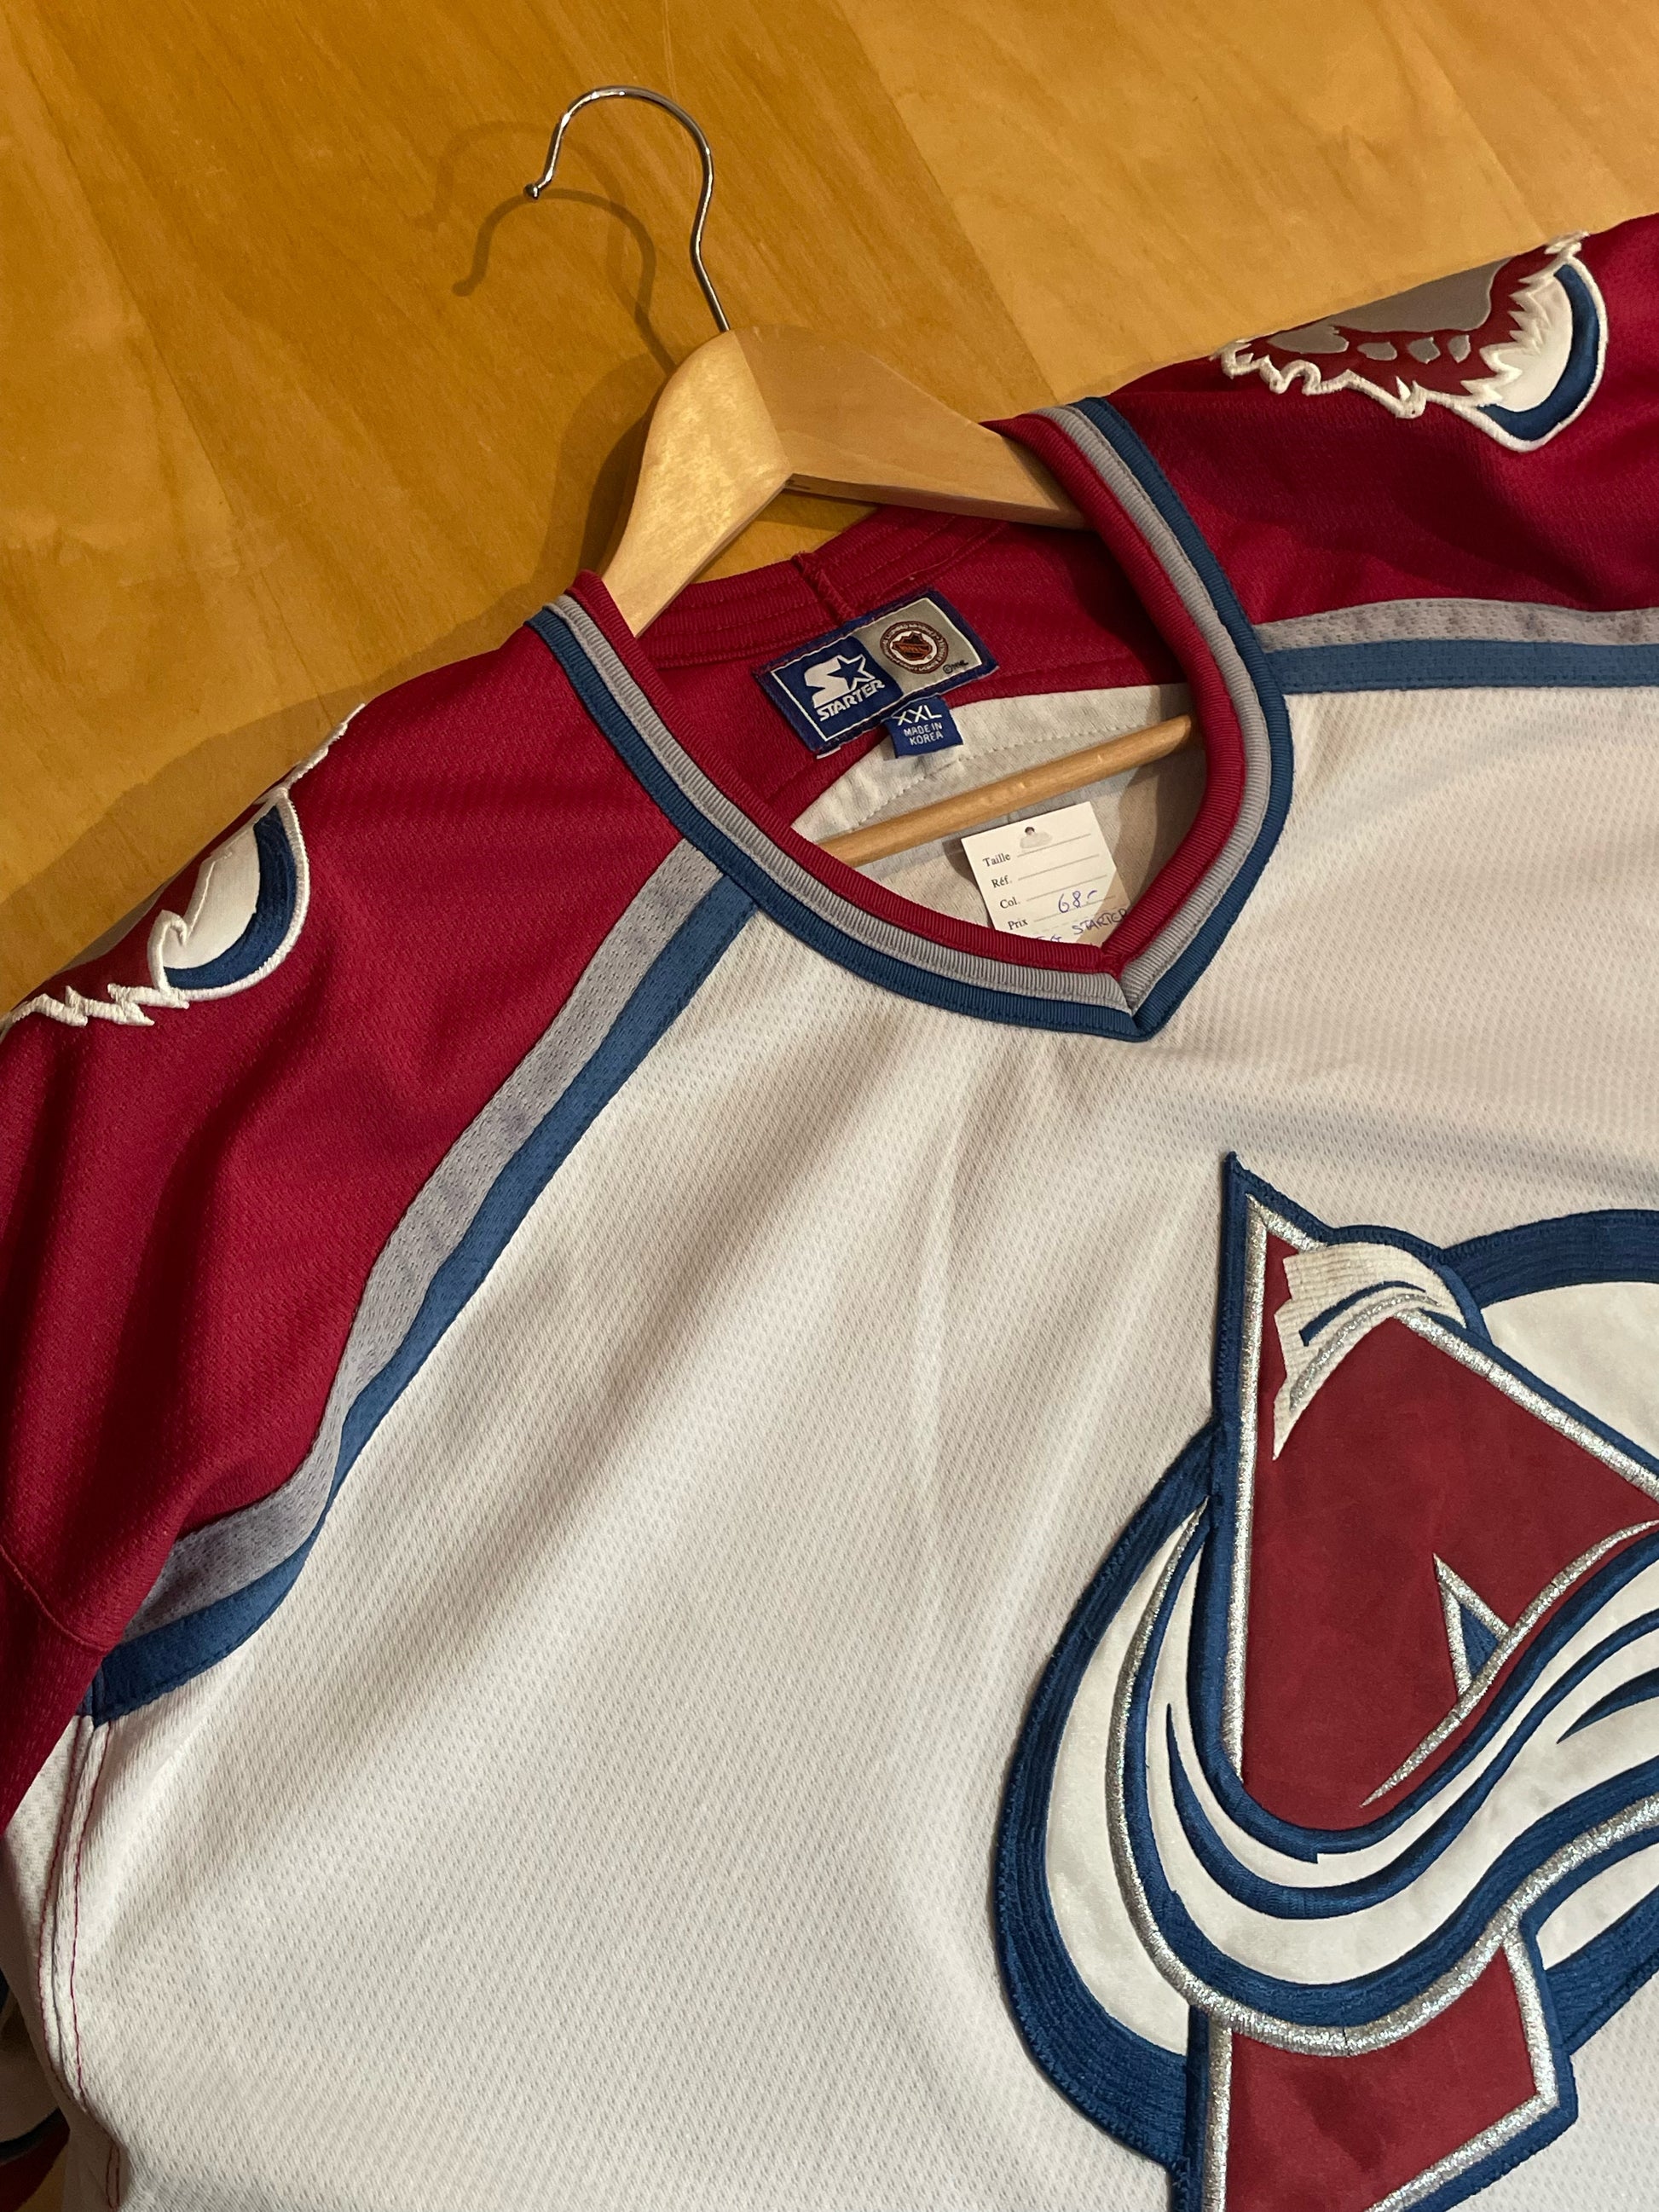 Vintage Starter NHL Colorado Avalanche Hockey Jersey Size. XL 